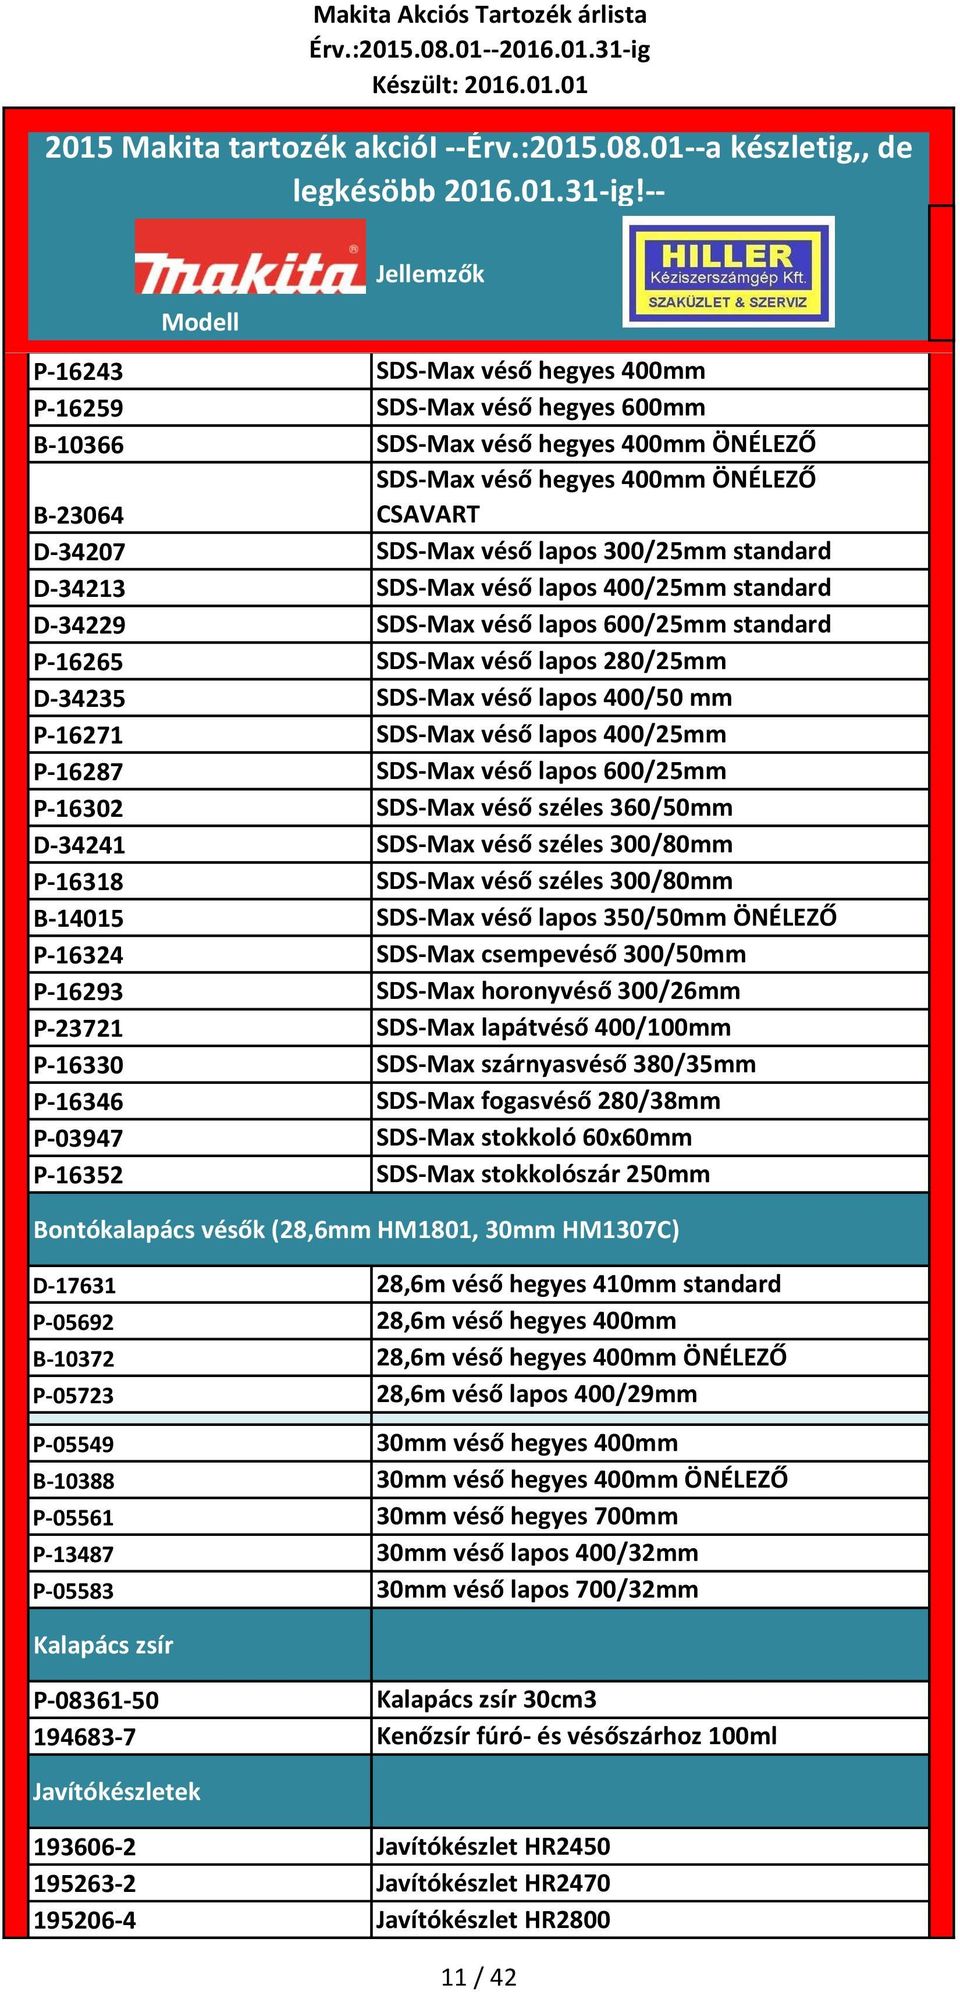 400/25mm P-16287 SDS-Max véső lapos 600/25mm P-16302 SDS-Max véső széles 360/50mm D-34241 SDS-Max véső széles 300/80mm P-16318 SDS-Max véső széles 300/80mm B-14015 SDS-Max véső lapos 350/50mm ÖNÉLEZŐ